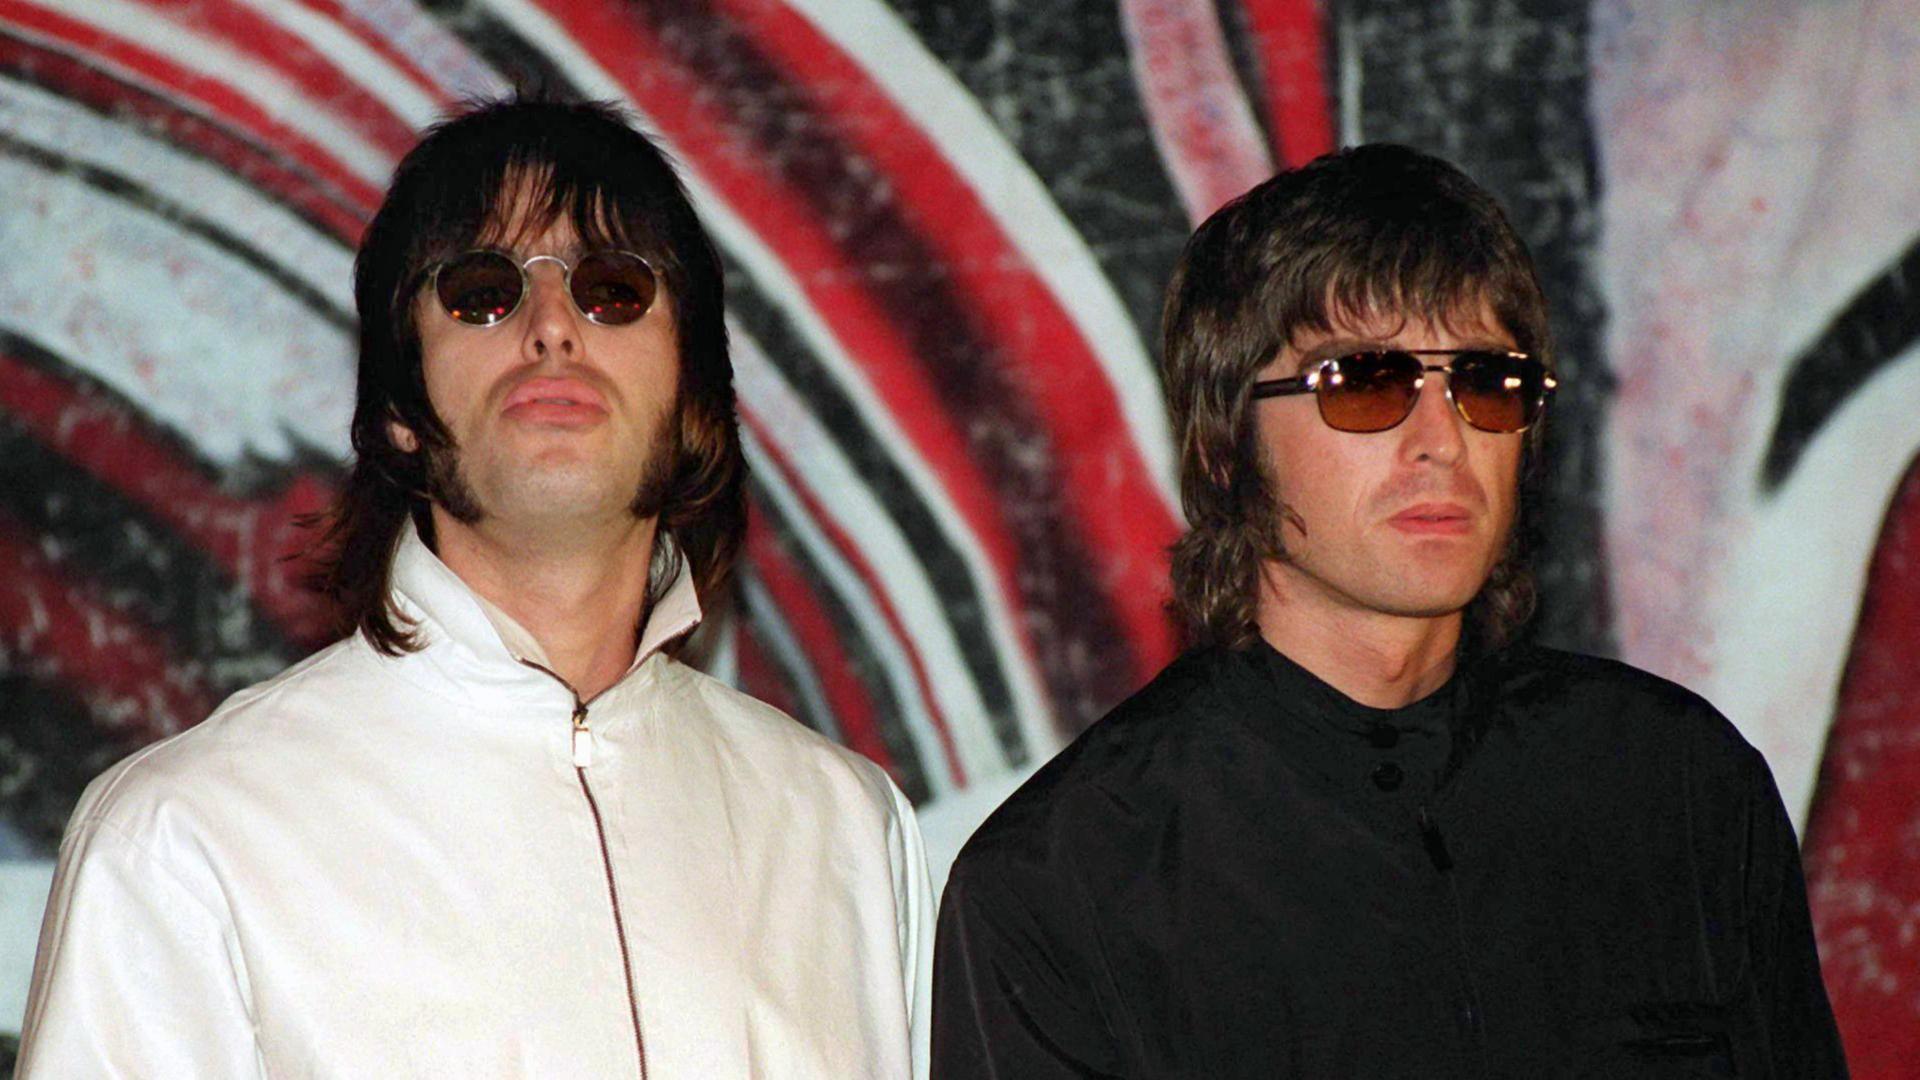 Liam (l.) und Noel Gallagher von der britischen Rockband Oasis bei einer Pressekonferenz 1999 in London.